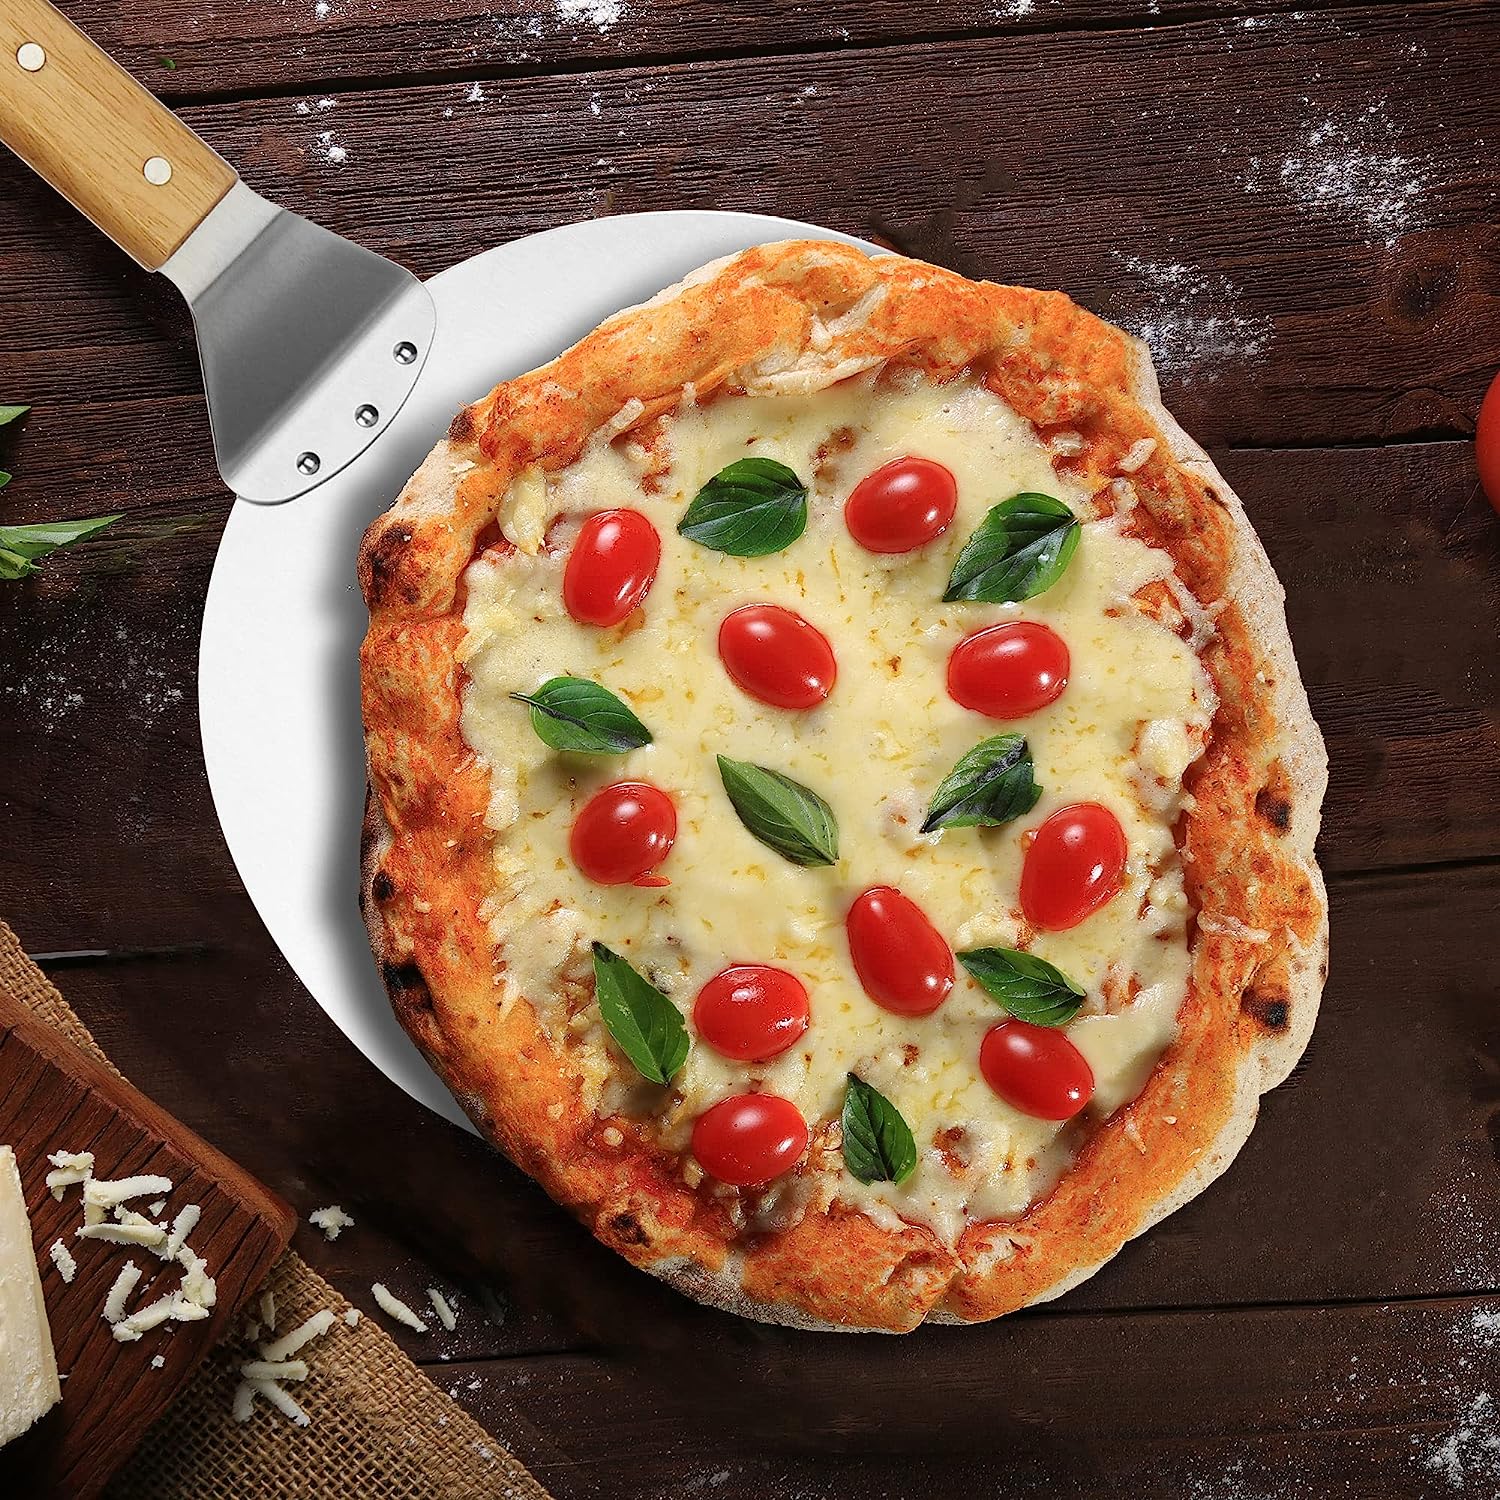 Pizzaschaufel aus rostfreiem Edelstahl – Pizzaheber mit Holzgriff – Runder Pizzaschieber für Pizza, Flammkuchen und Brot (braun/silberfarben – rund)